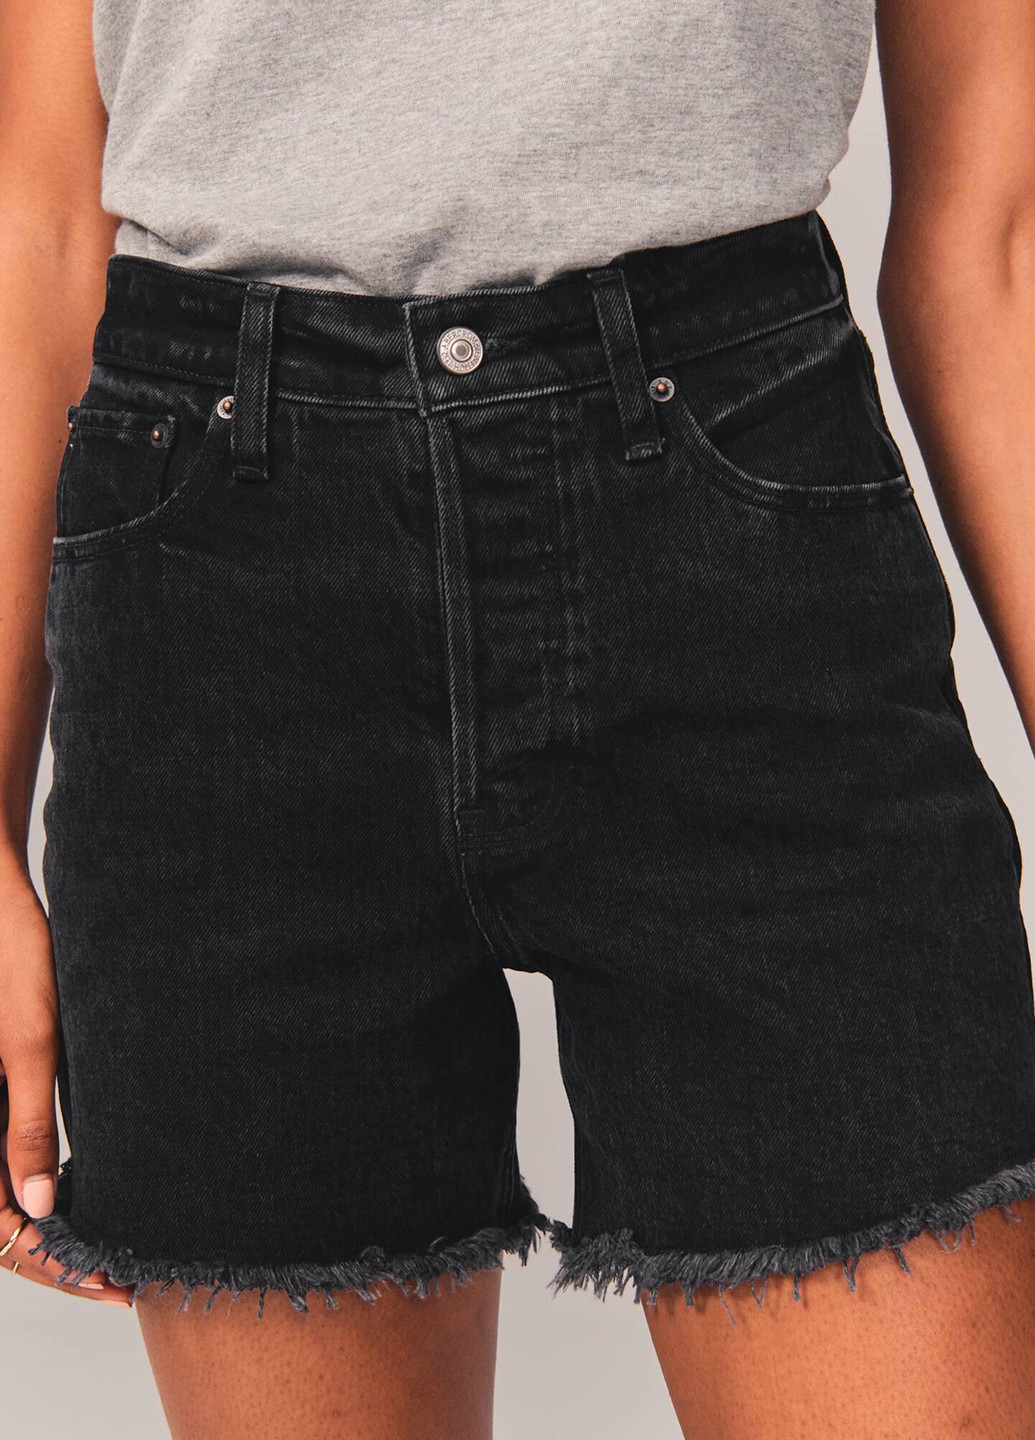 Шорты Abercrombie & Fitch однотонные тёмно-серые джинсовые хлопок